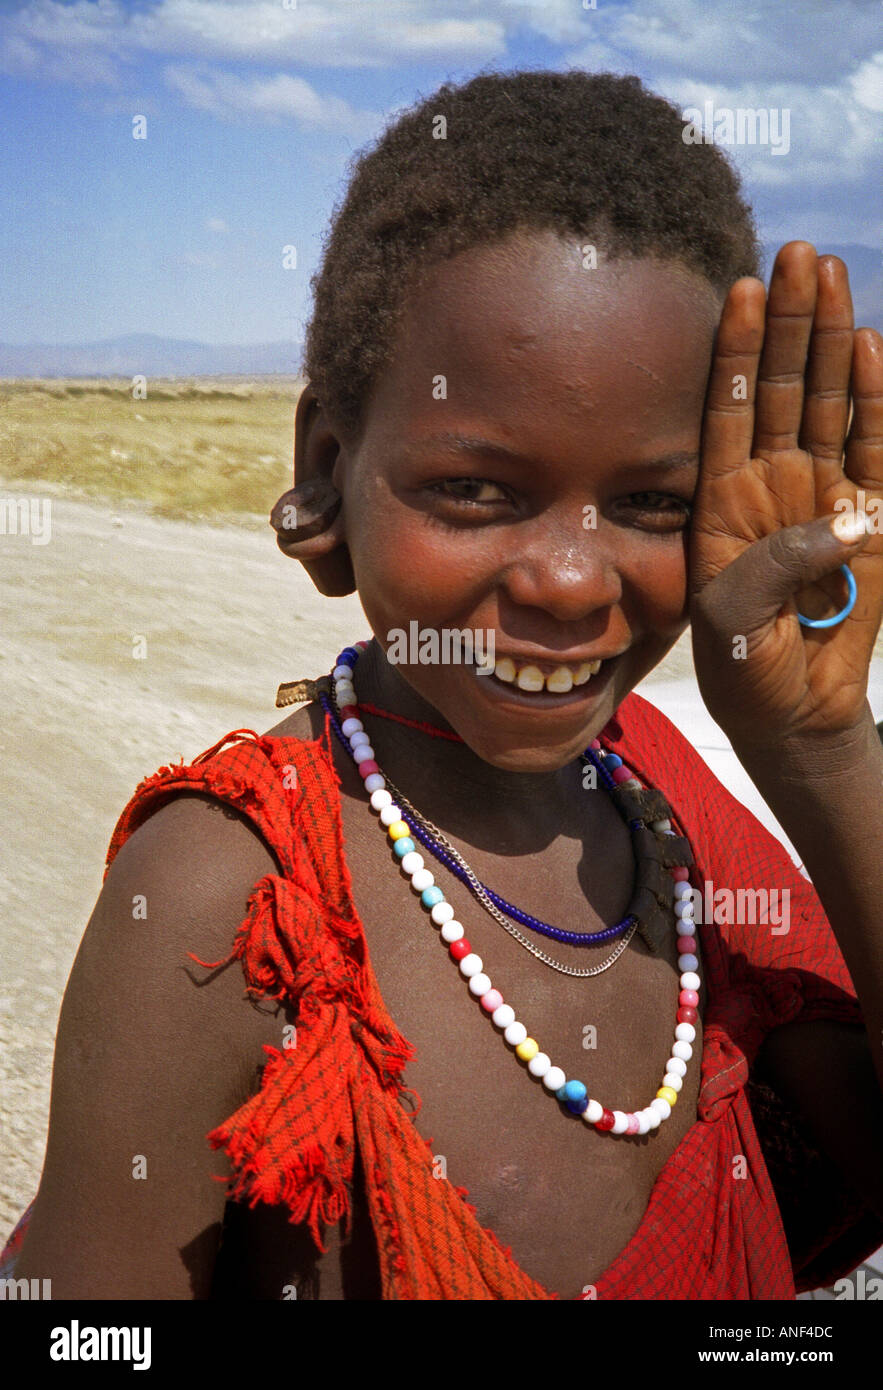 Smiling boy décoré de perles colorées travail peuple masai Masai Mara National Reserve d'Ewaso Ngiro sud du Kenya Afrique de l'Est Banque D'Images